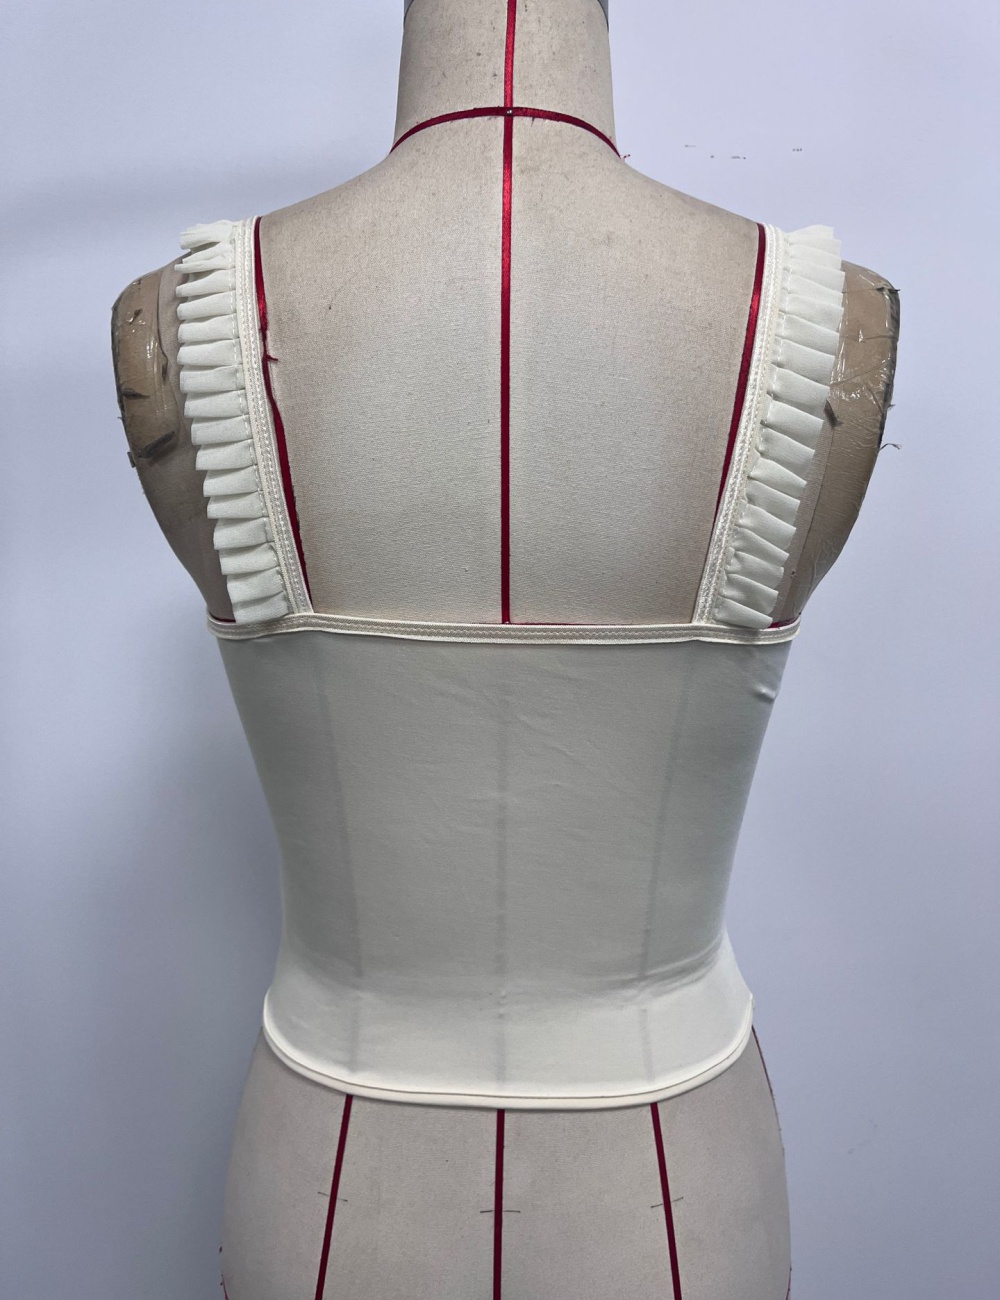 Lotus leaf edges vest spicegirl corset for women